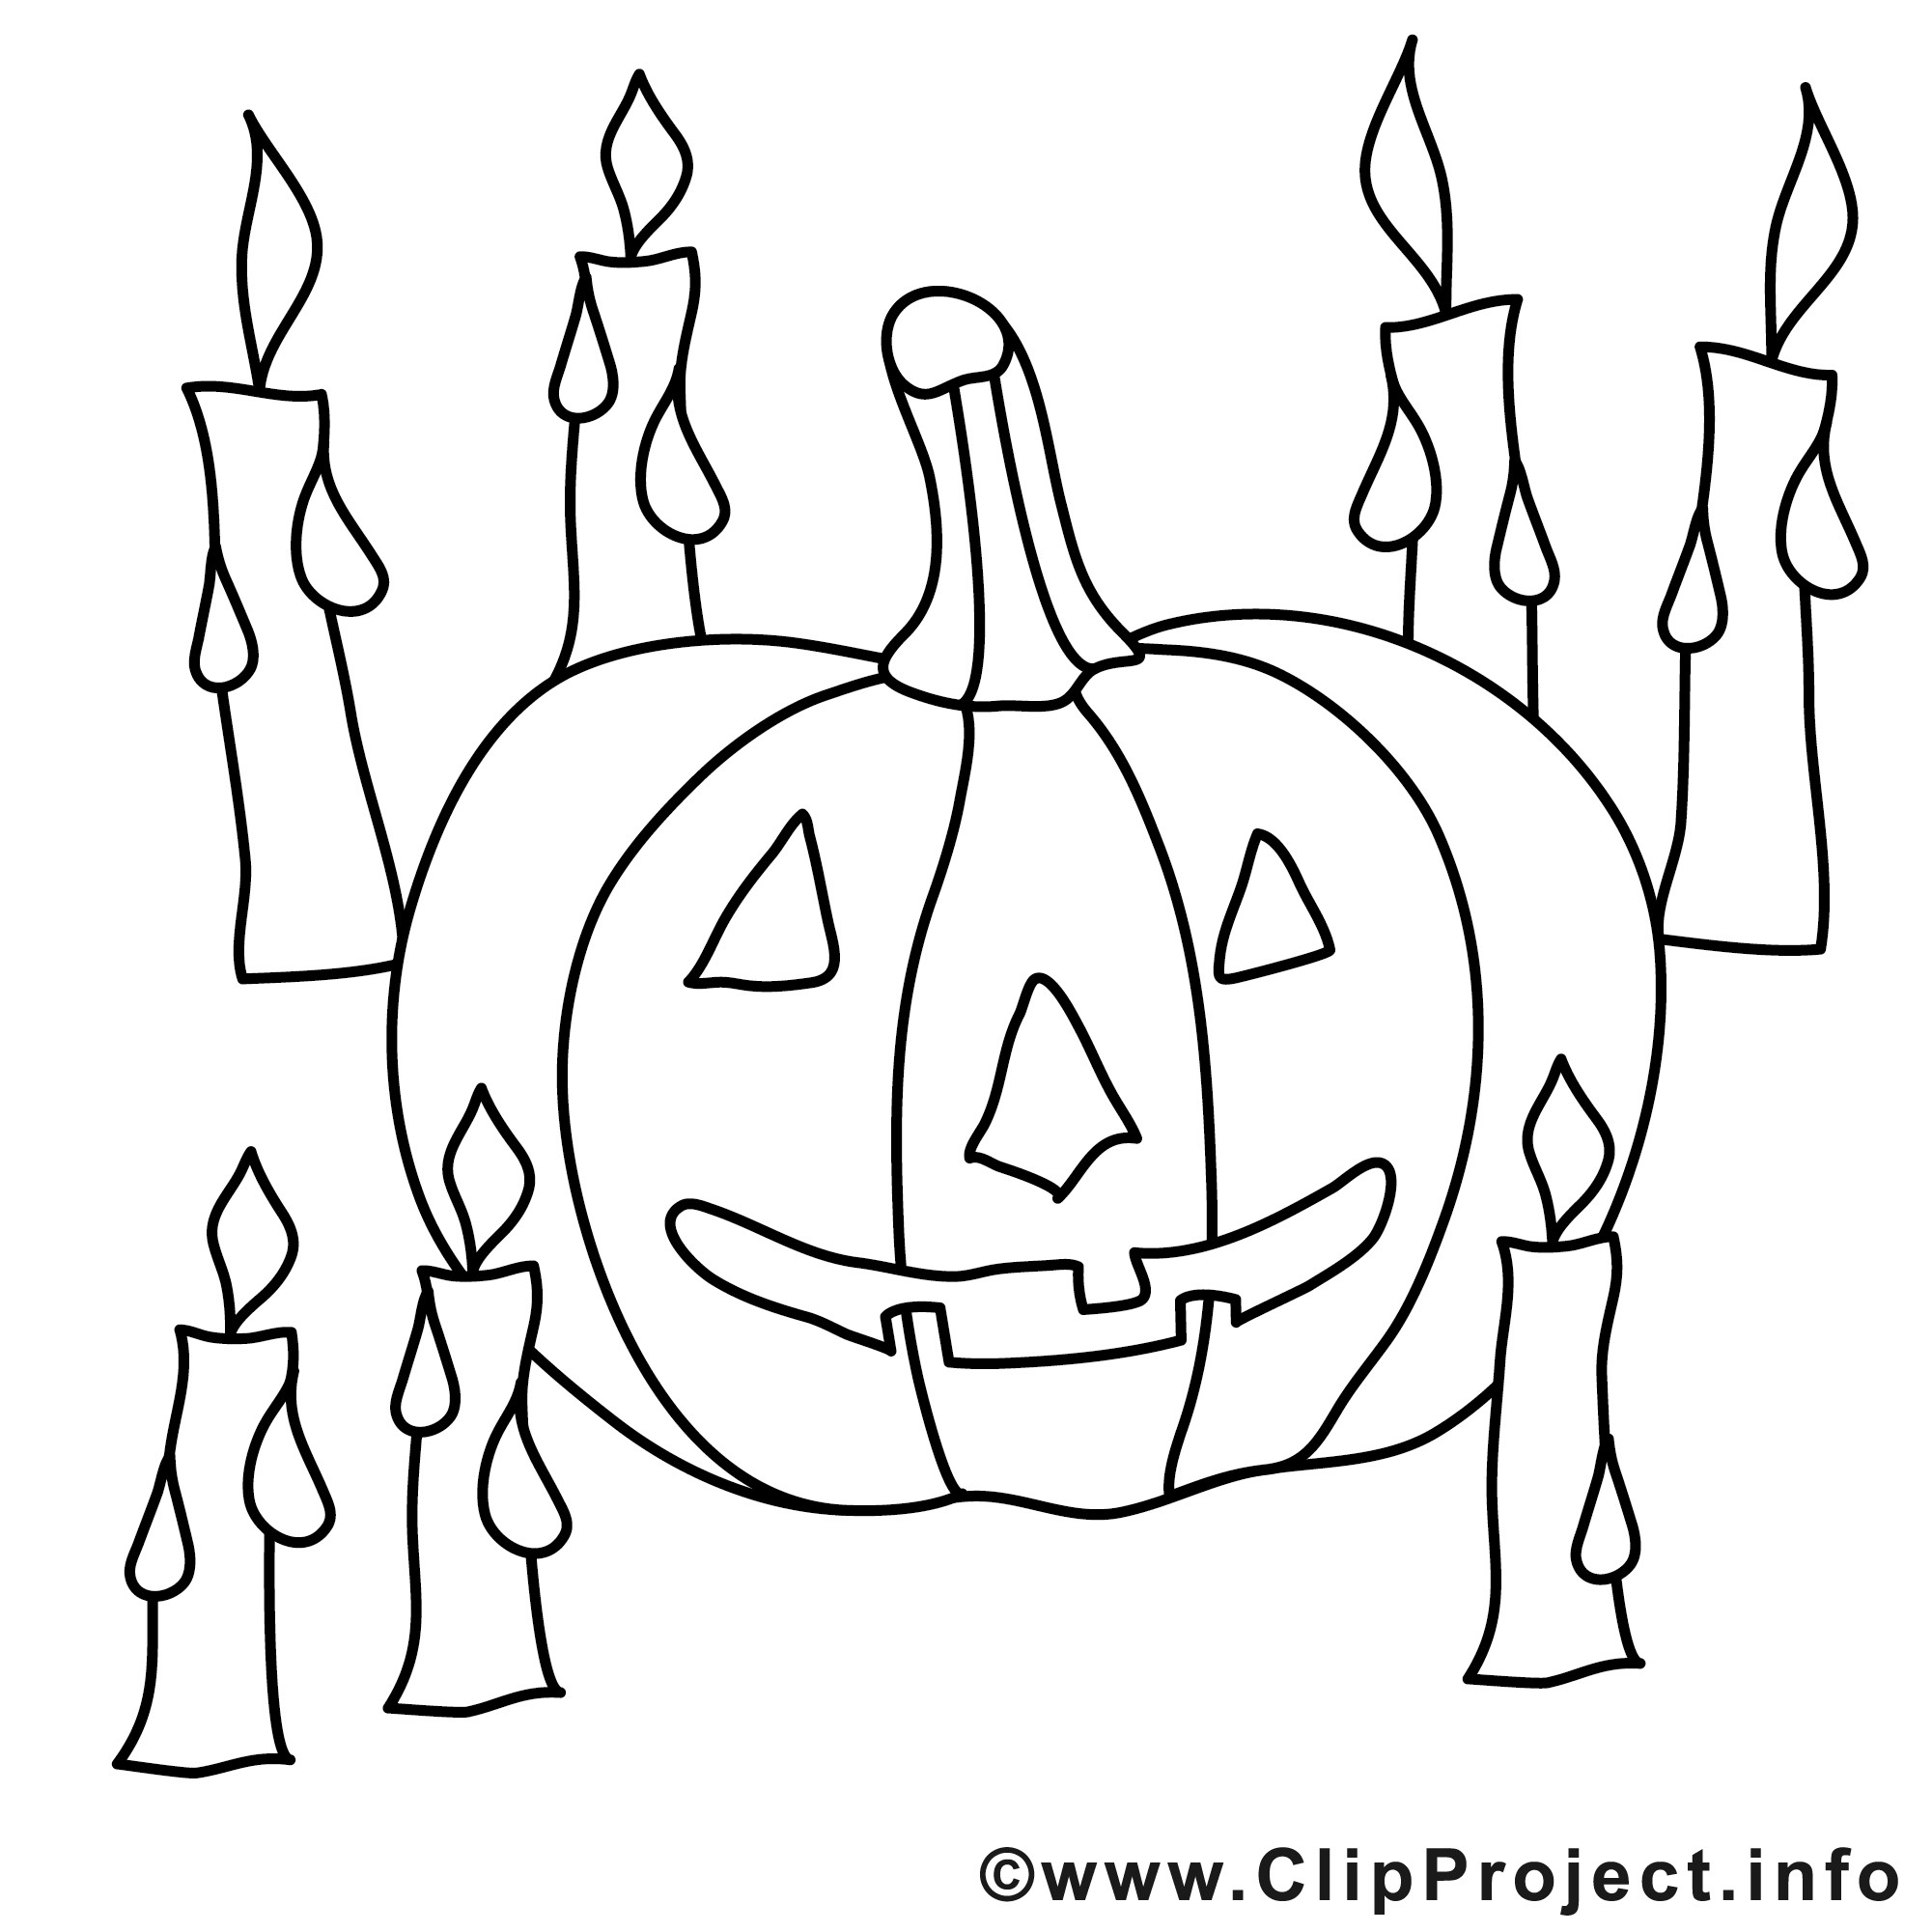 Kürbis Malvorlagen
 Halloween Malvorlage kostenlos mit Kerzen und Kuerbis